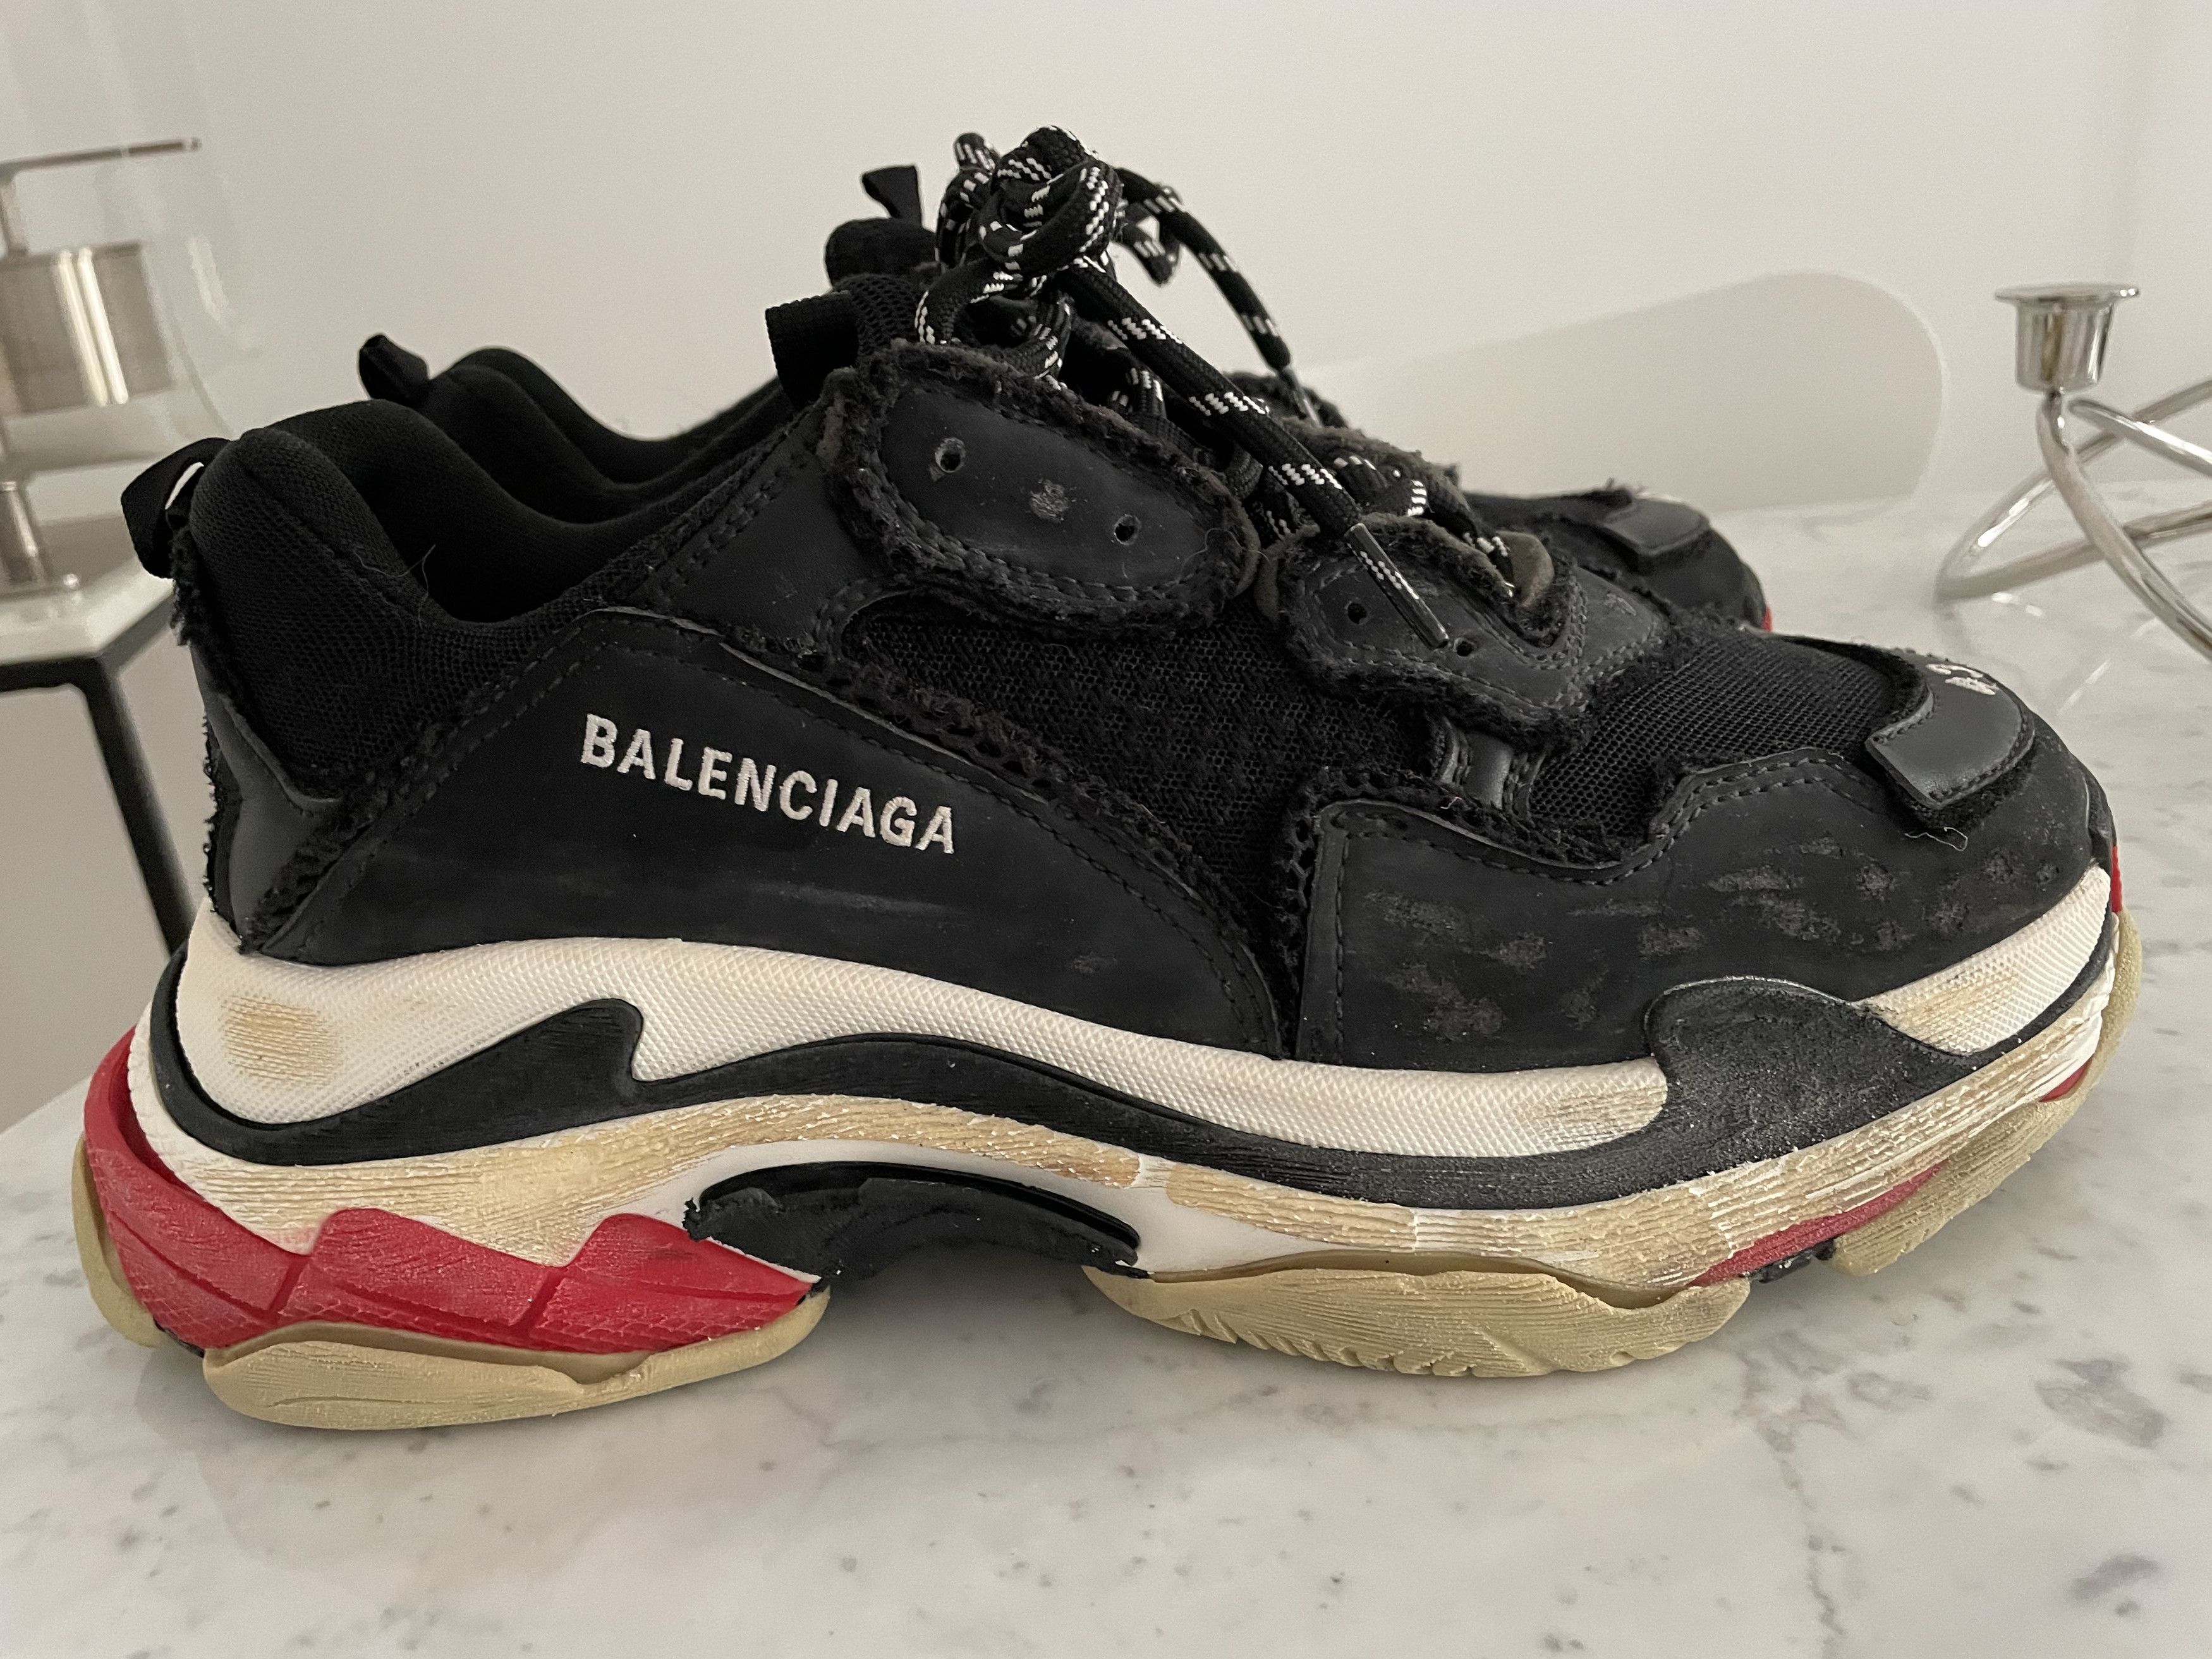 Balenciaga Balenciaga Triple S DIY effect black red 43 sneakers us 10 |  Grailed